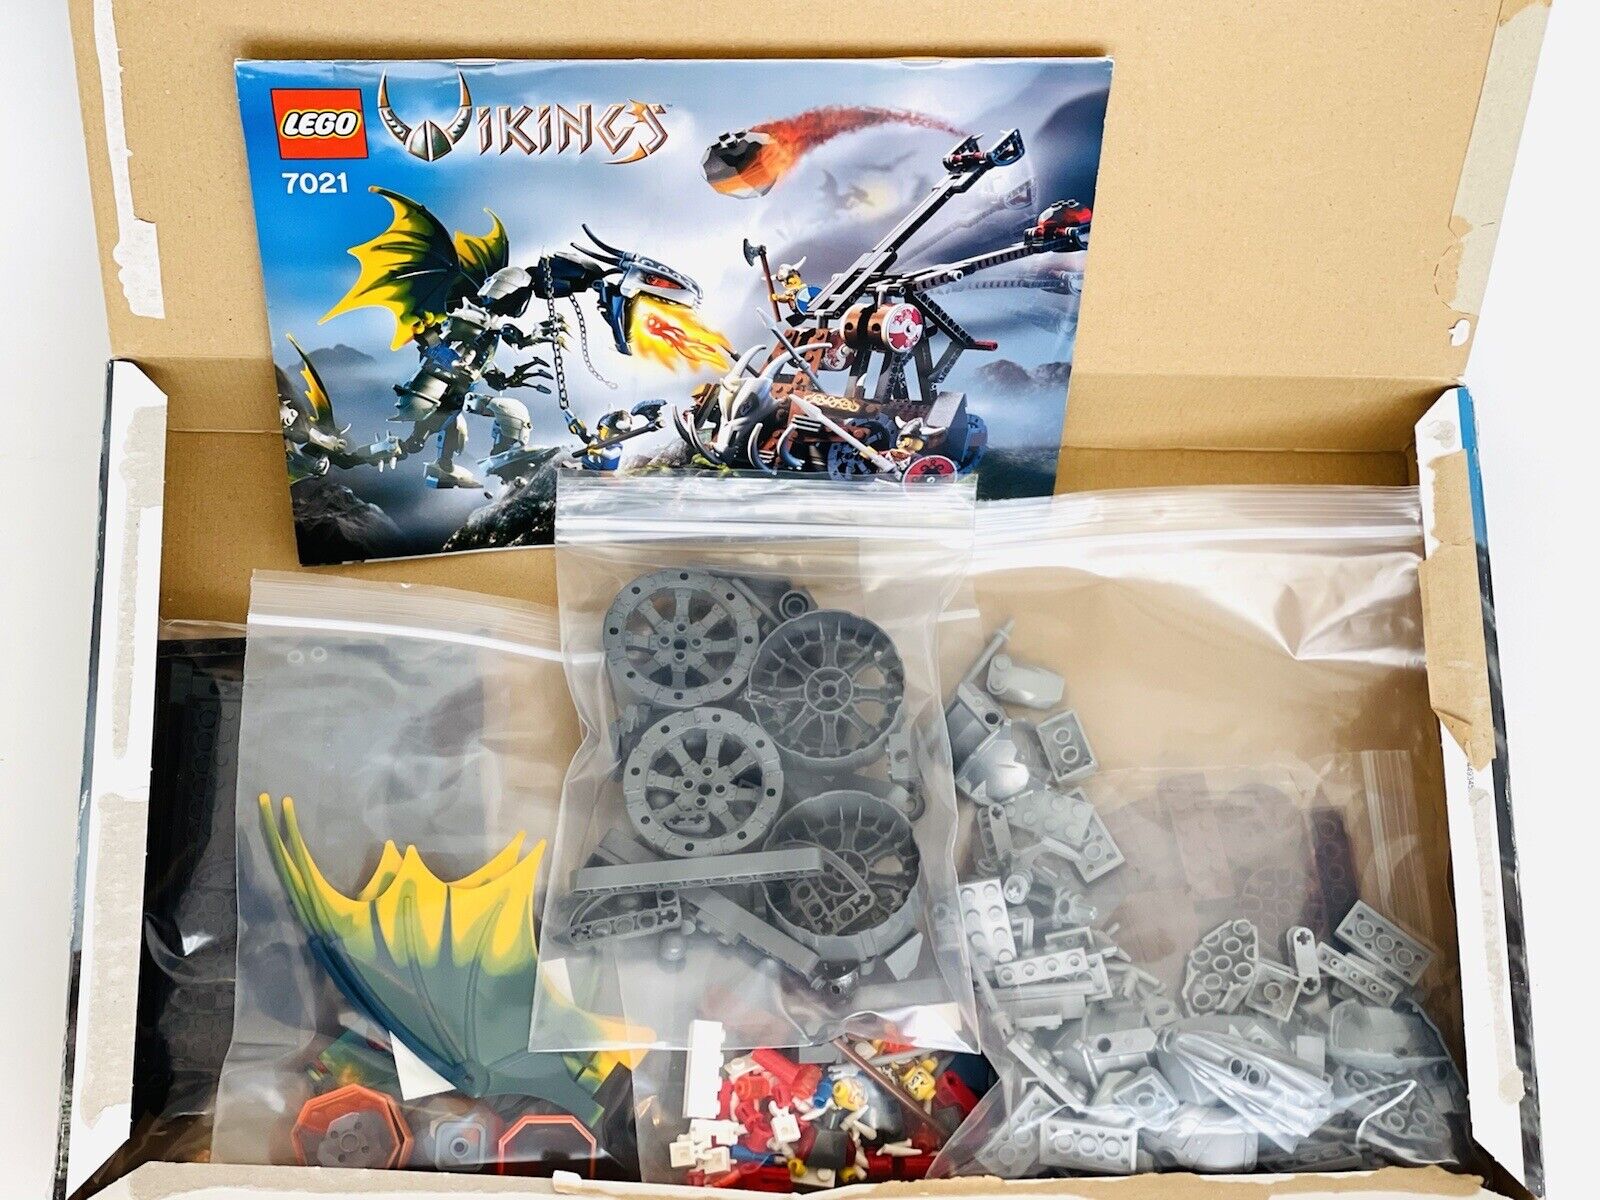 LEGO Vikings 7021 Viking Double Catapult vs. Armoured Ofnir Dragon